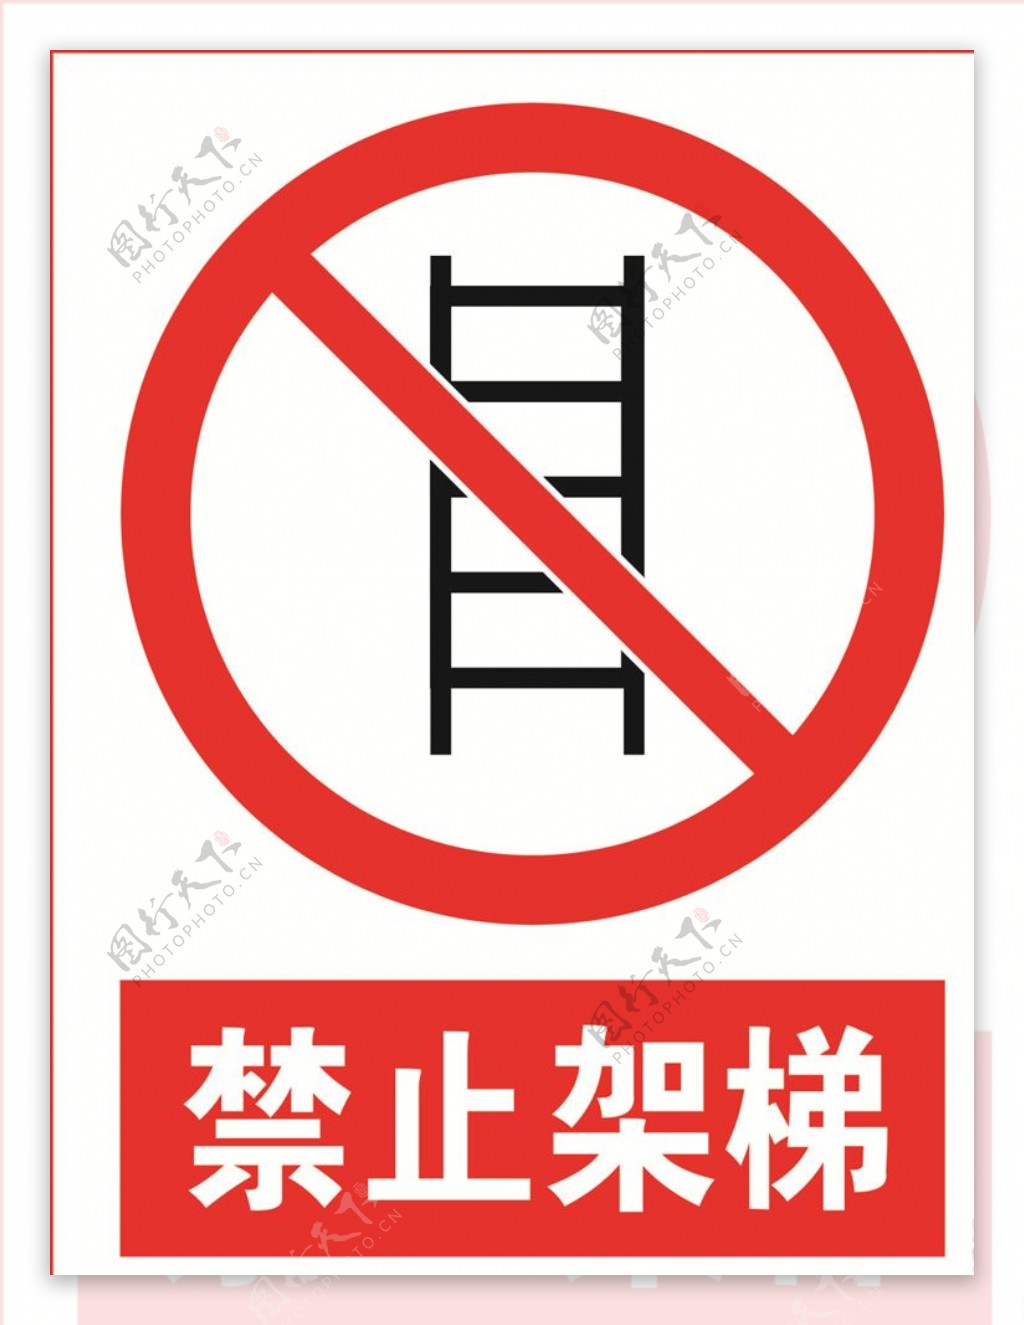 禁止架梯图片